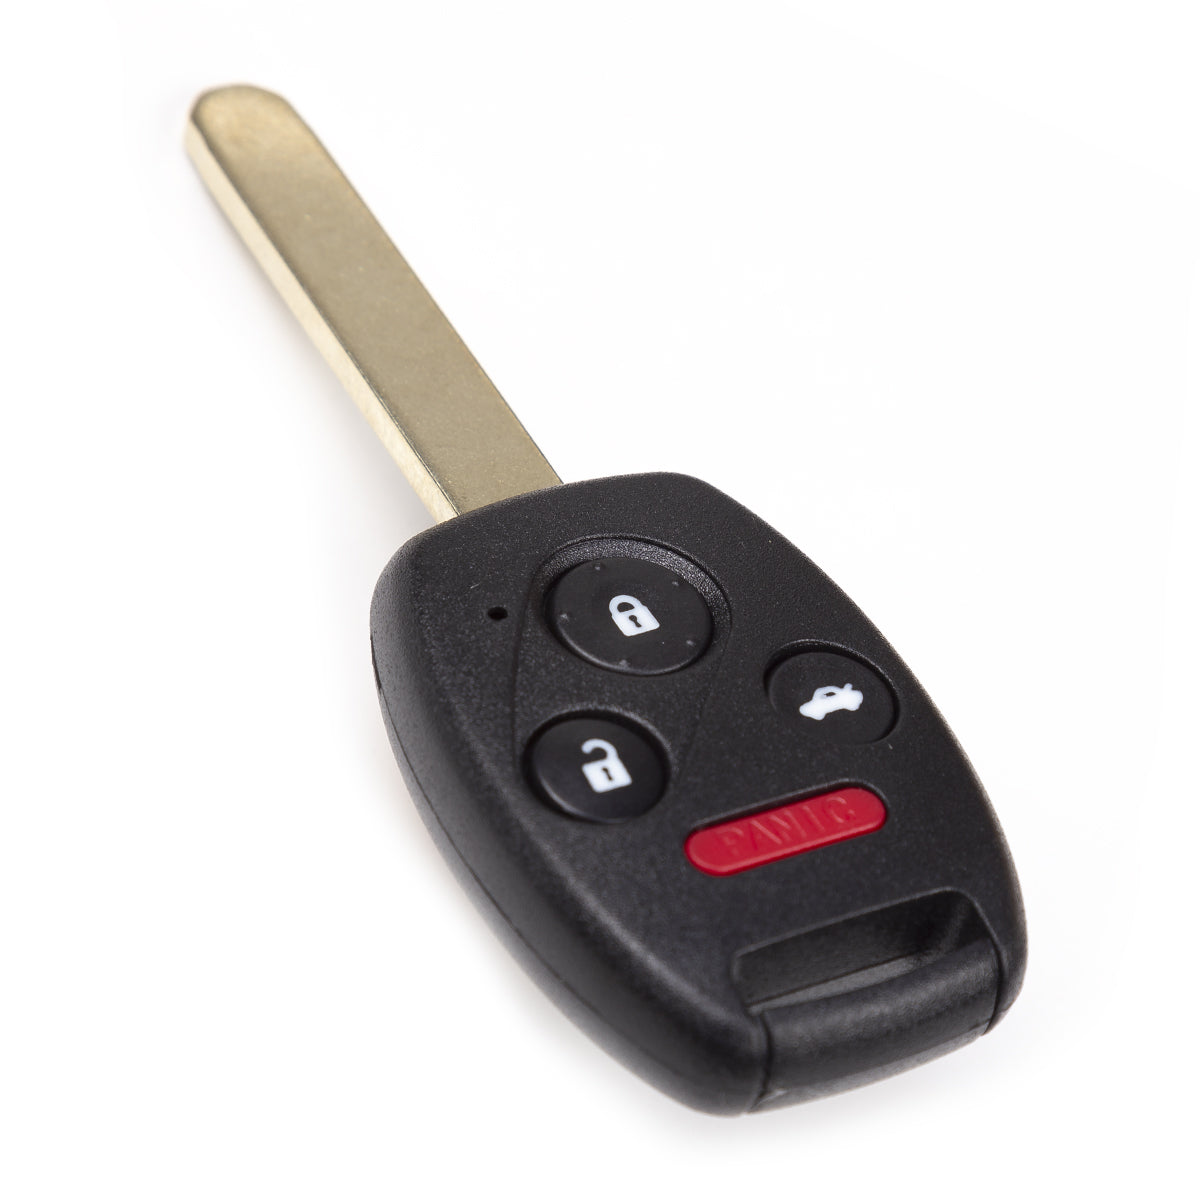 2006 Honda Accord Key Fob 4 Buttons FCC# 0UCG8D-380H-A